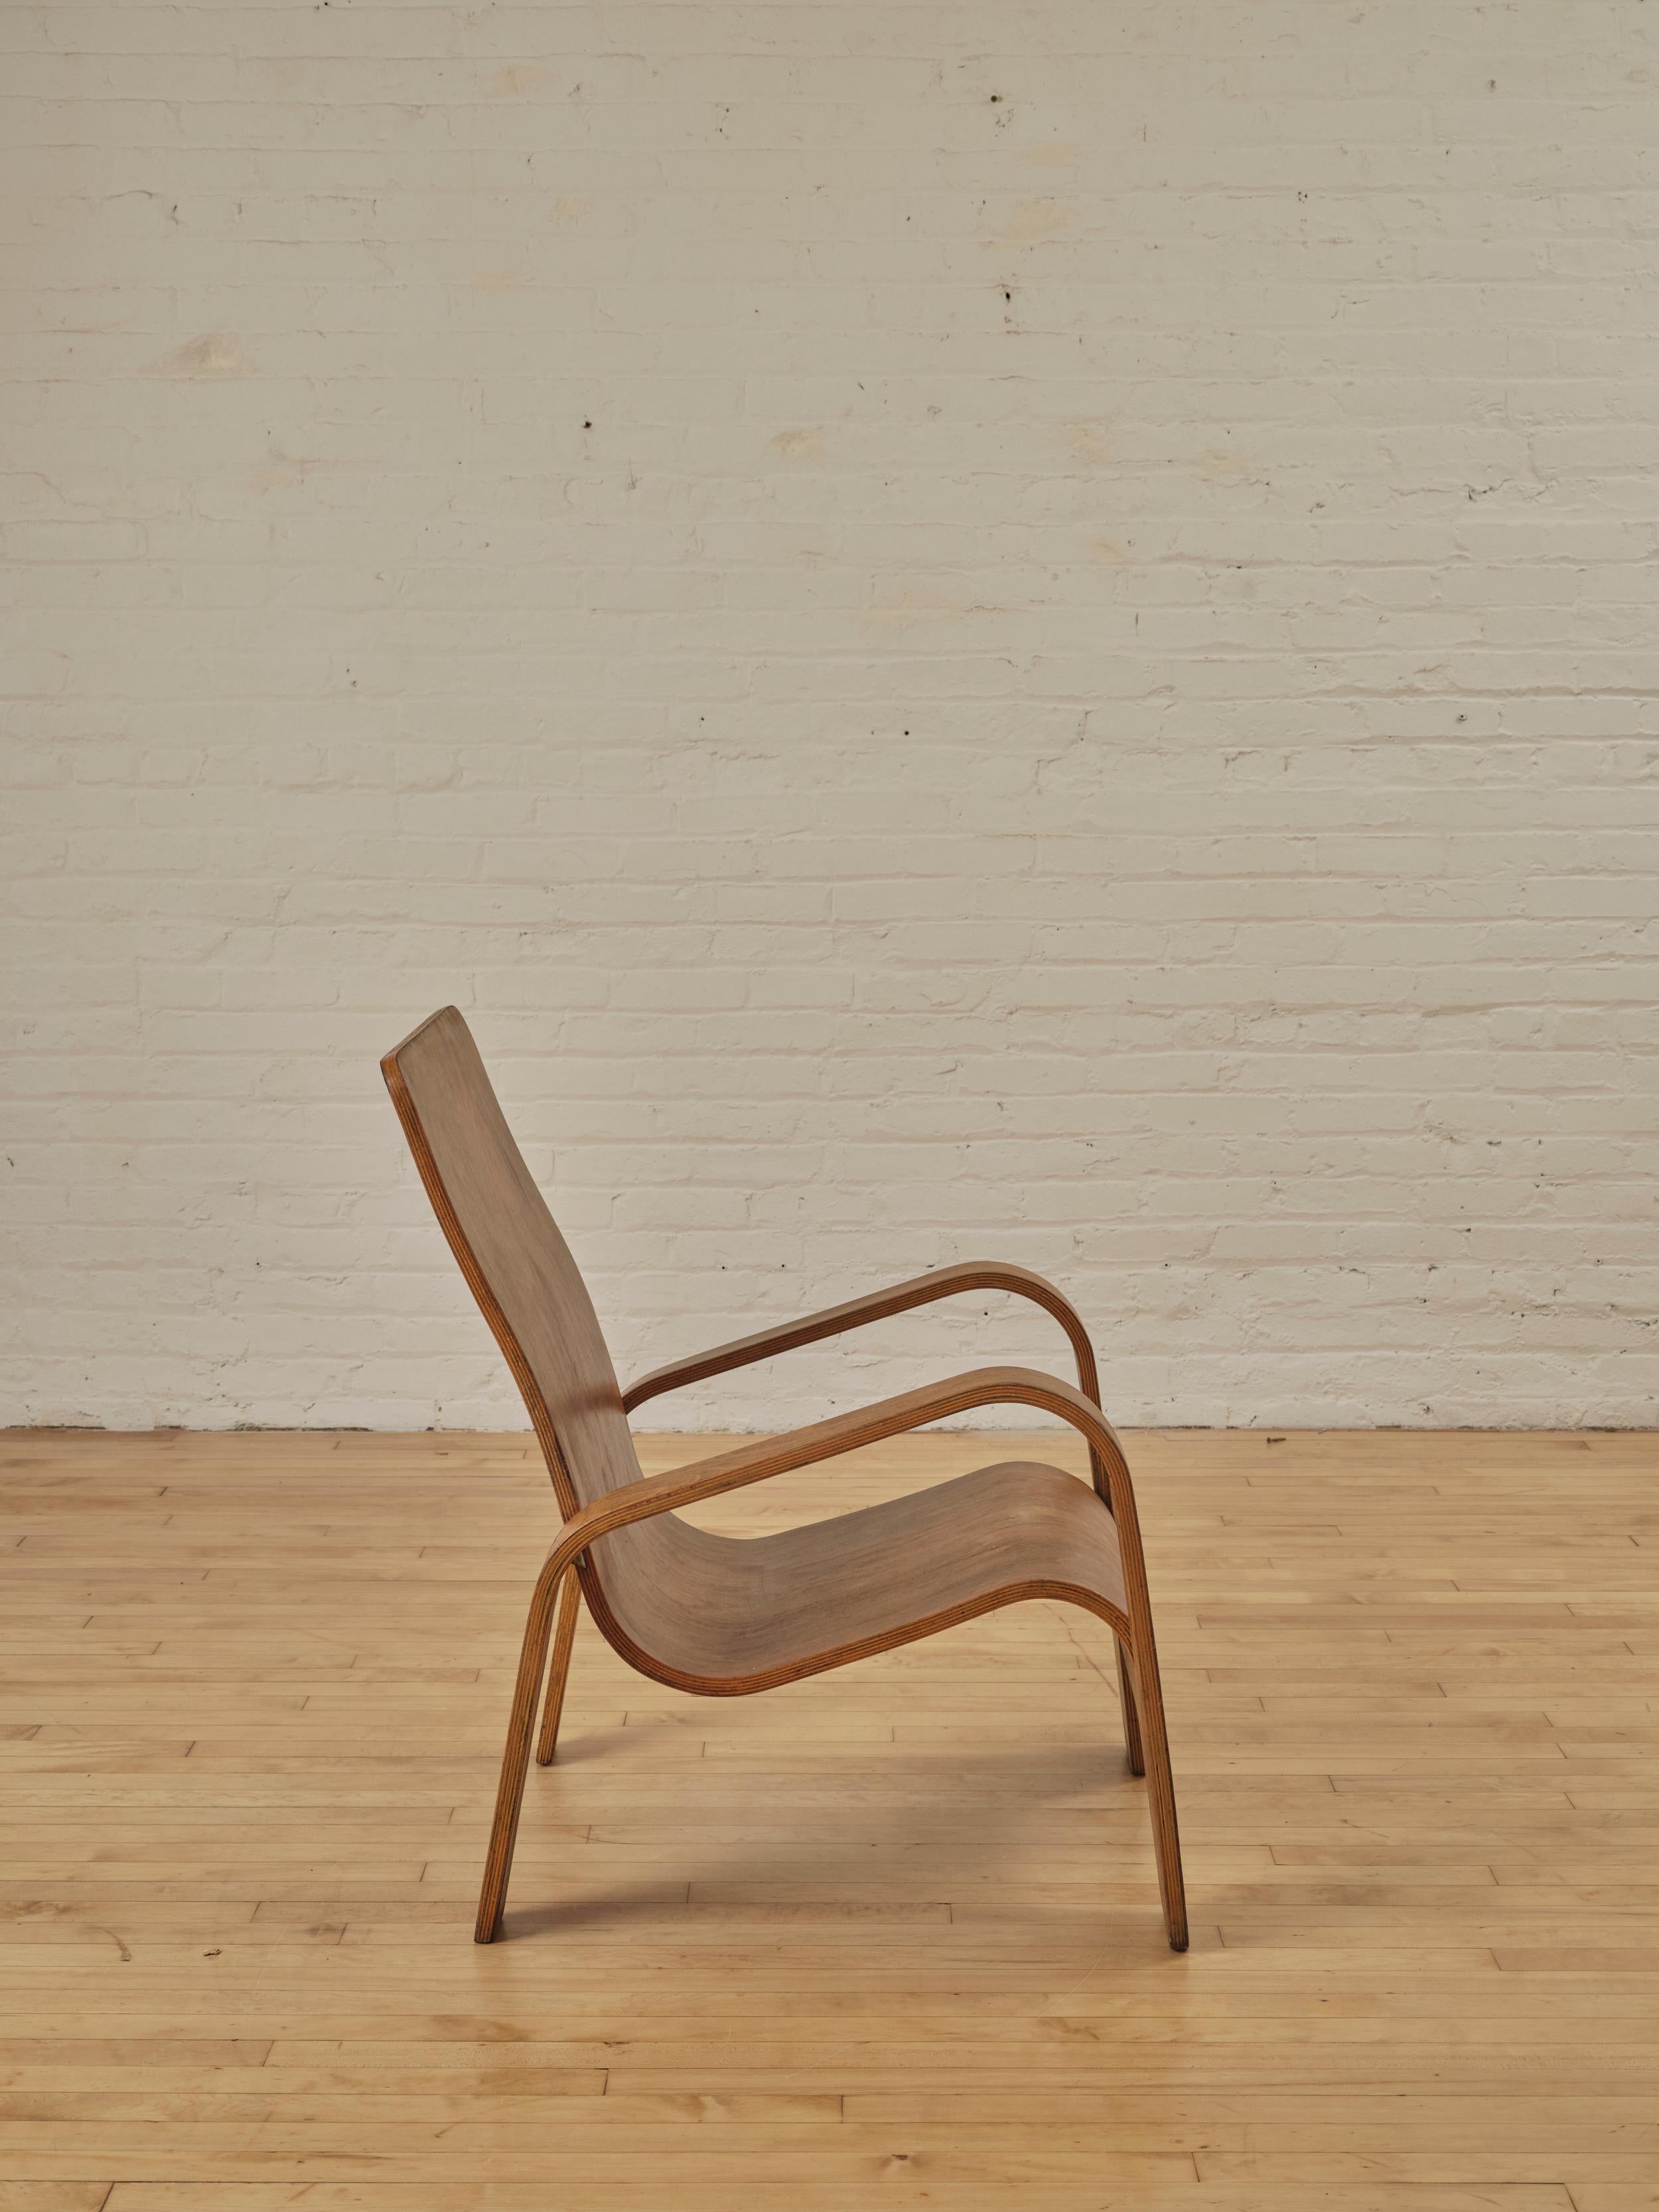 LaWo1 Wooden Lounge Chair by Han Pieck for Lawo Ommen, The Netherlands. Cette rare chaise moderne hollandaise est brillamment conçue et fabriquée à partir de plusieurs couches de contreplaqué de bouleau. Les pieds du dossier sont fixés au dossier du